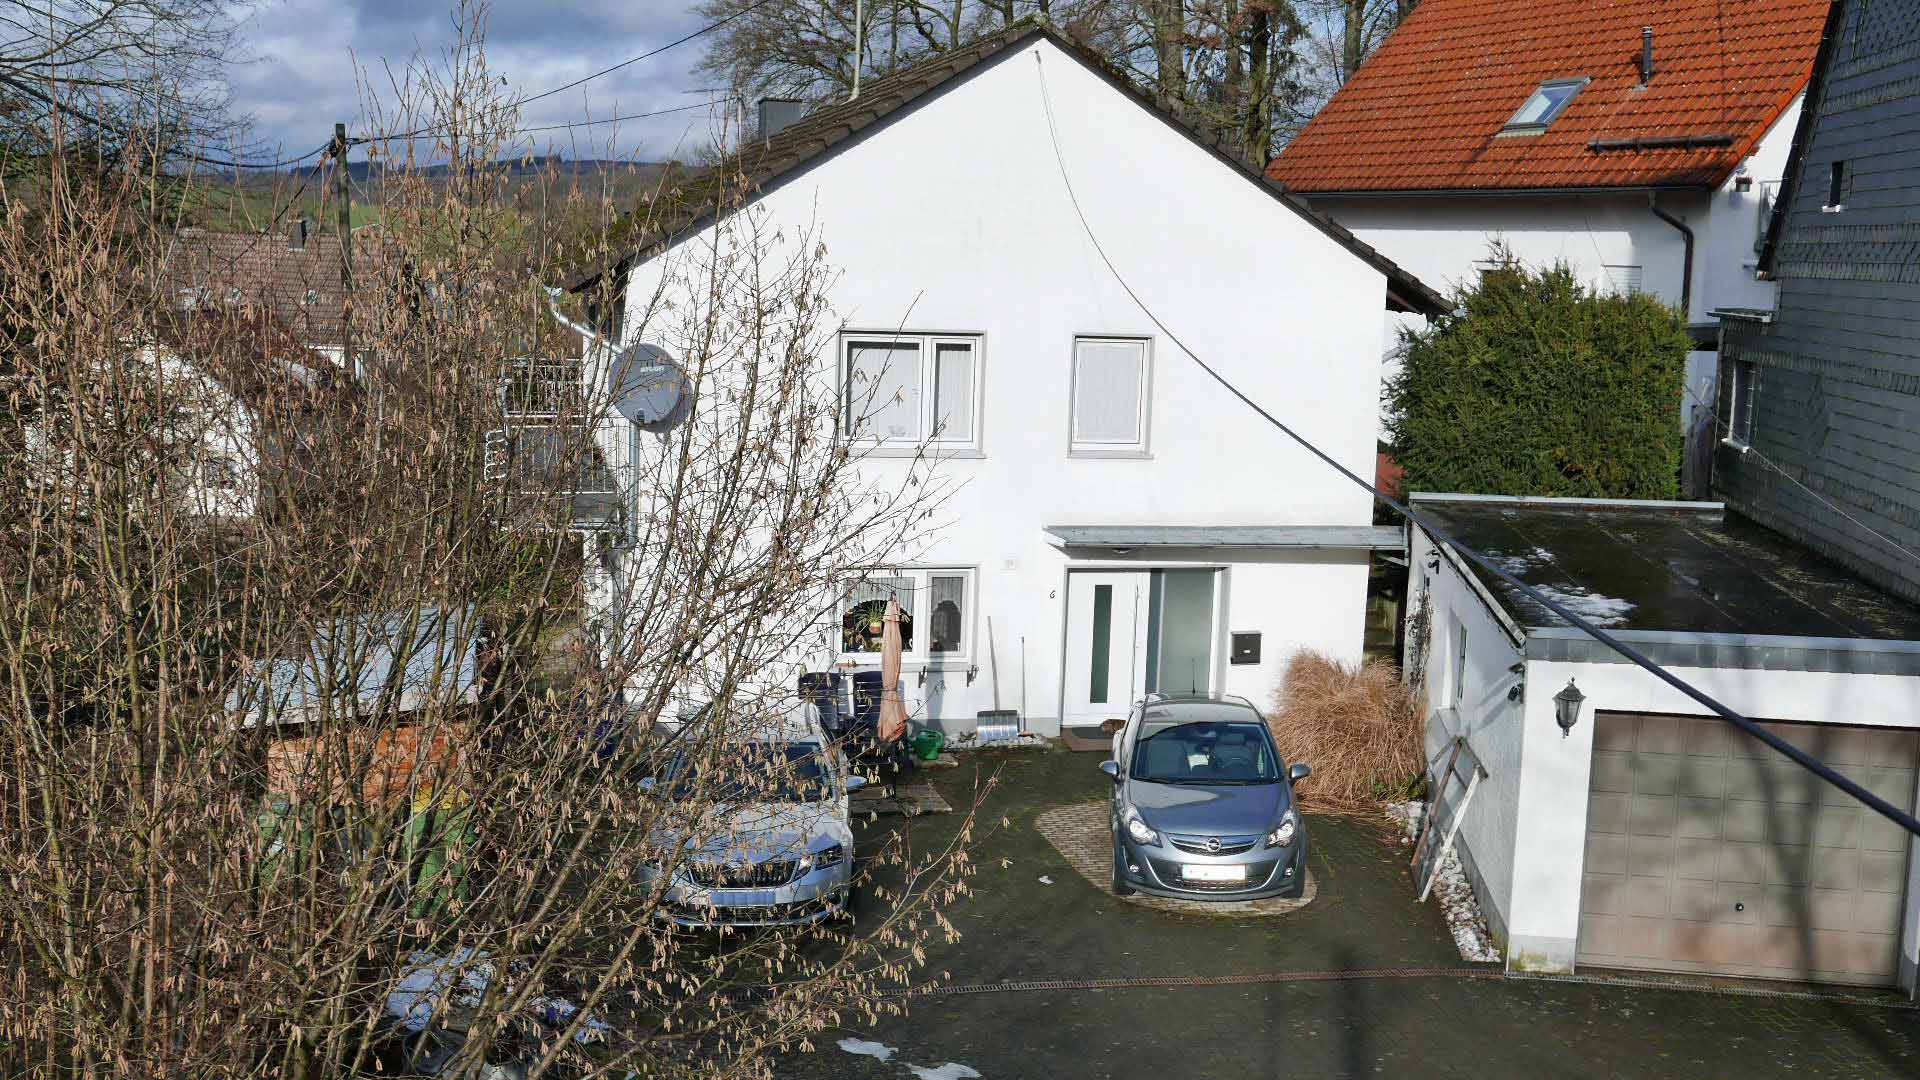 Reichshof-Nosbach: Familien-/ und rollstuhlgerechtes renoviertes Wohnhaus, massives Wohnhaus mit Garage im Winter...